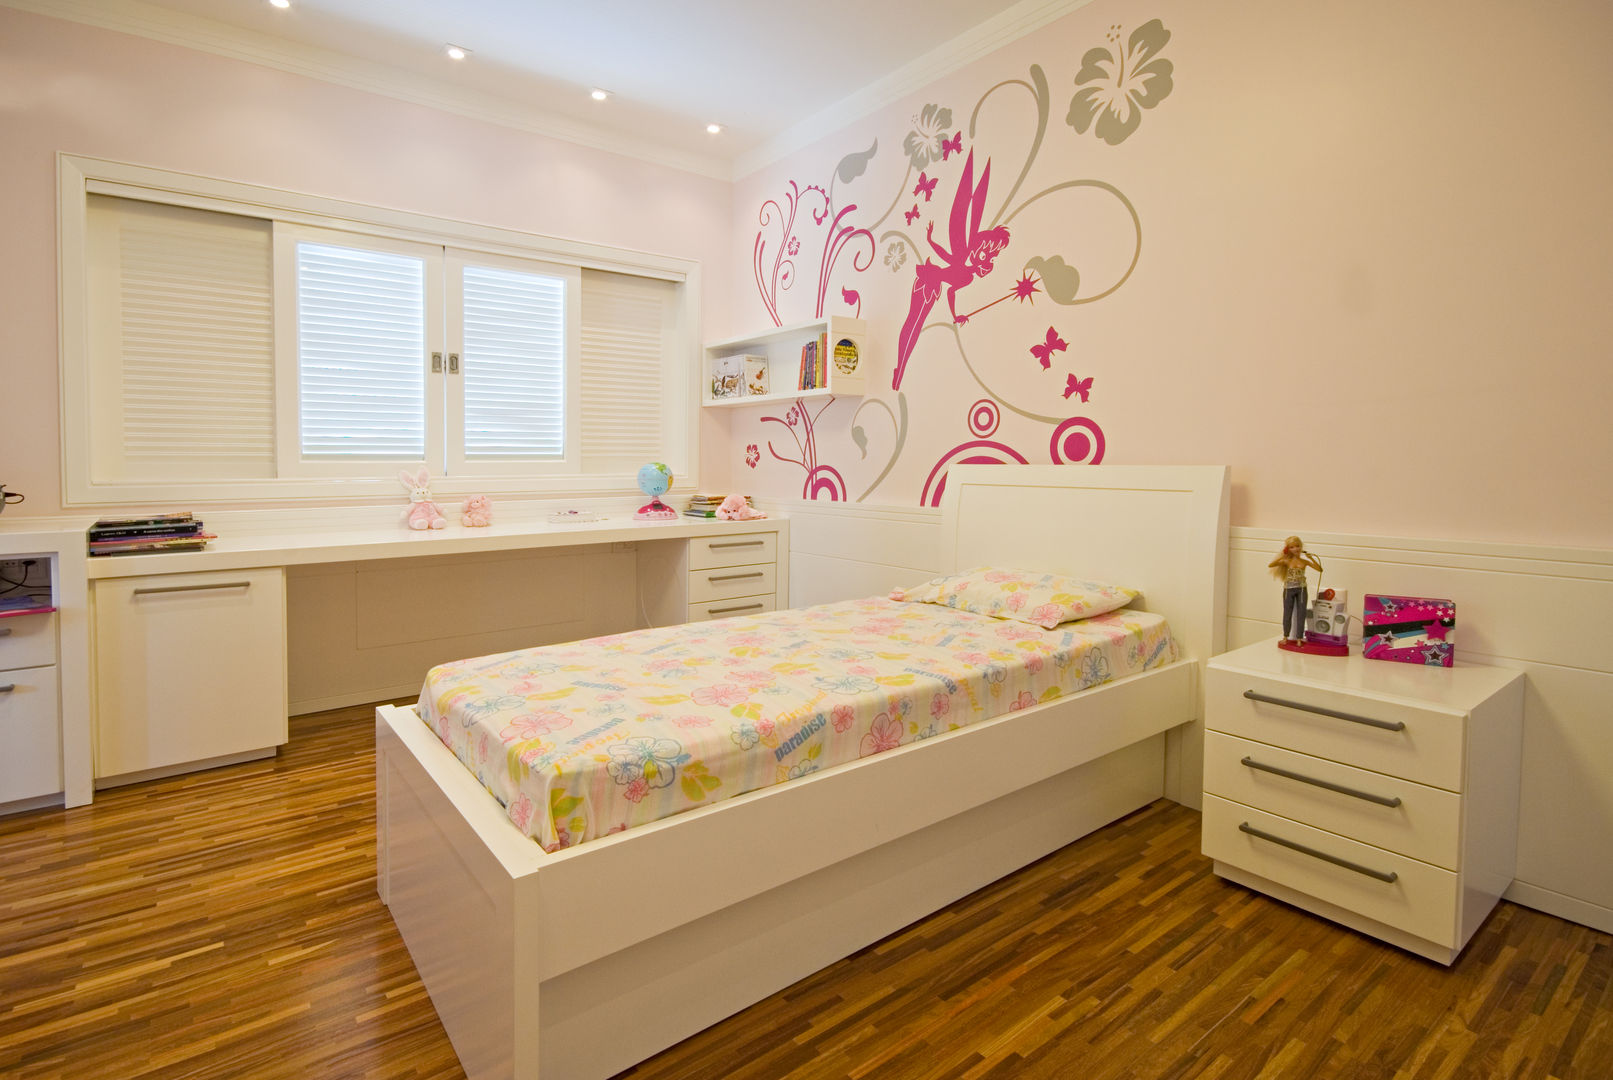 Casa Fbn, Lozí - Projeto e Obra Lozí - Projeto e Obra Nursery/kid’s room